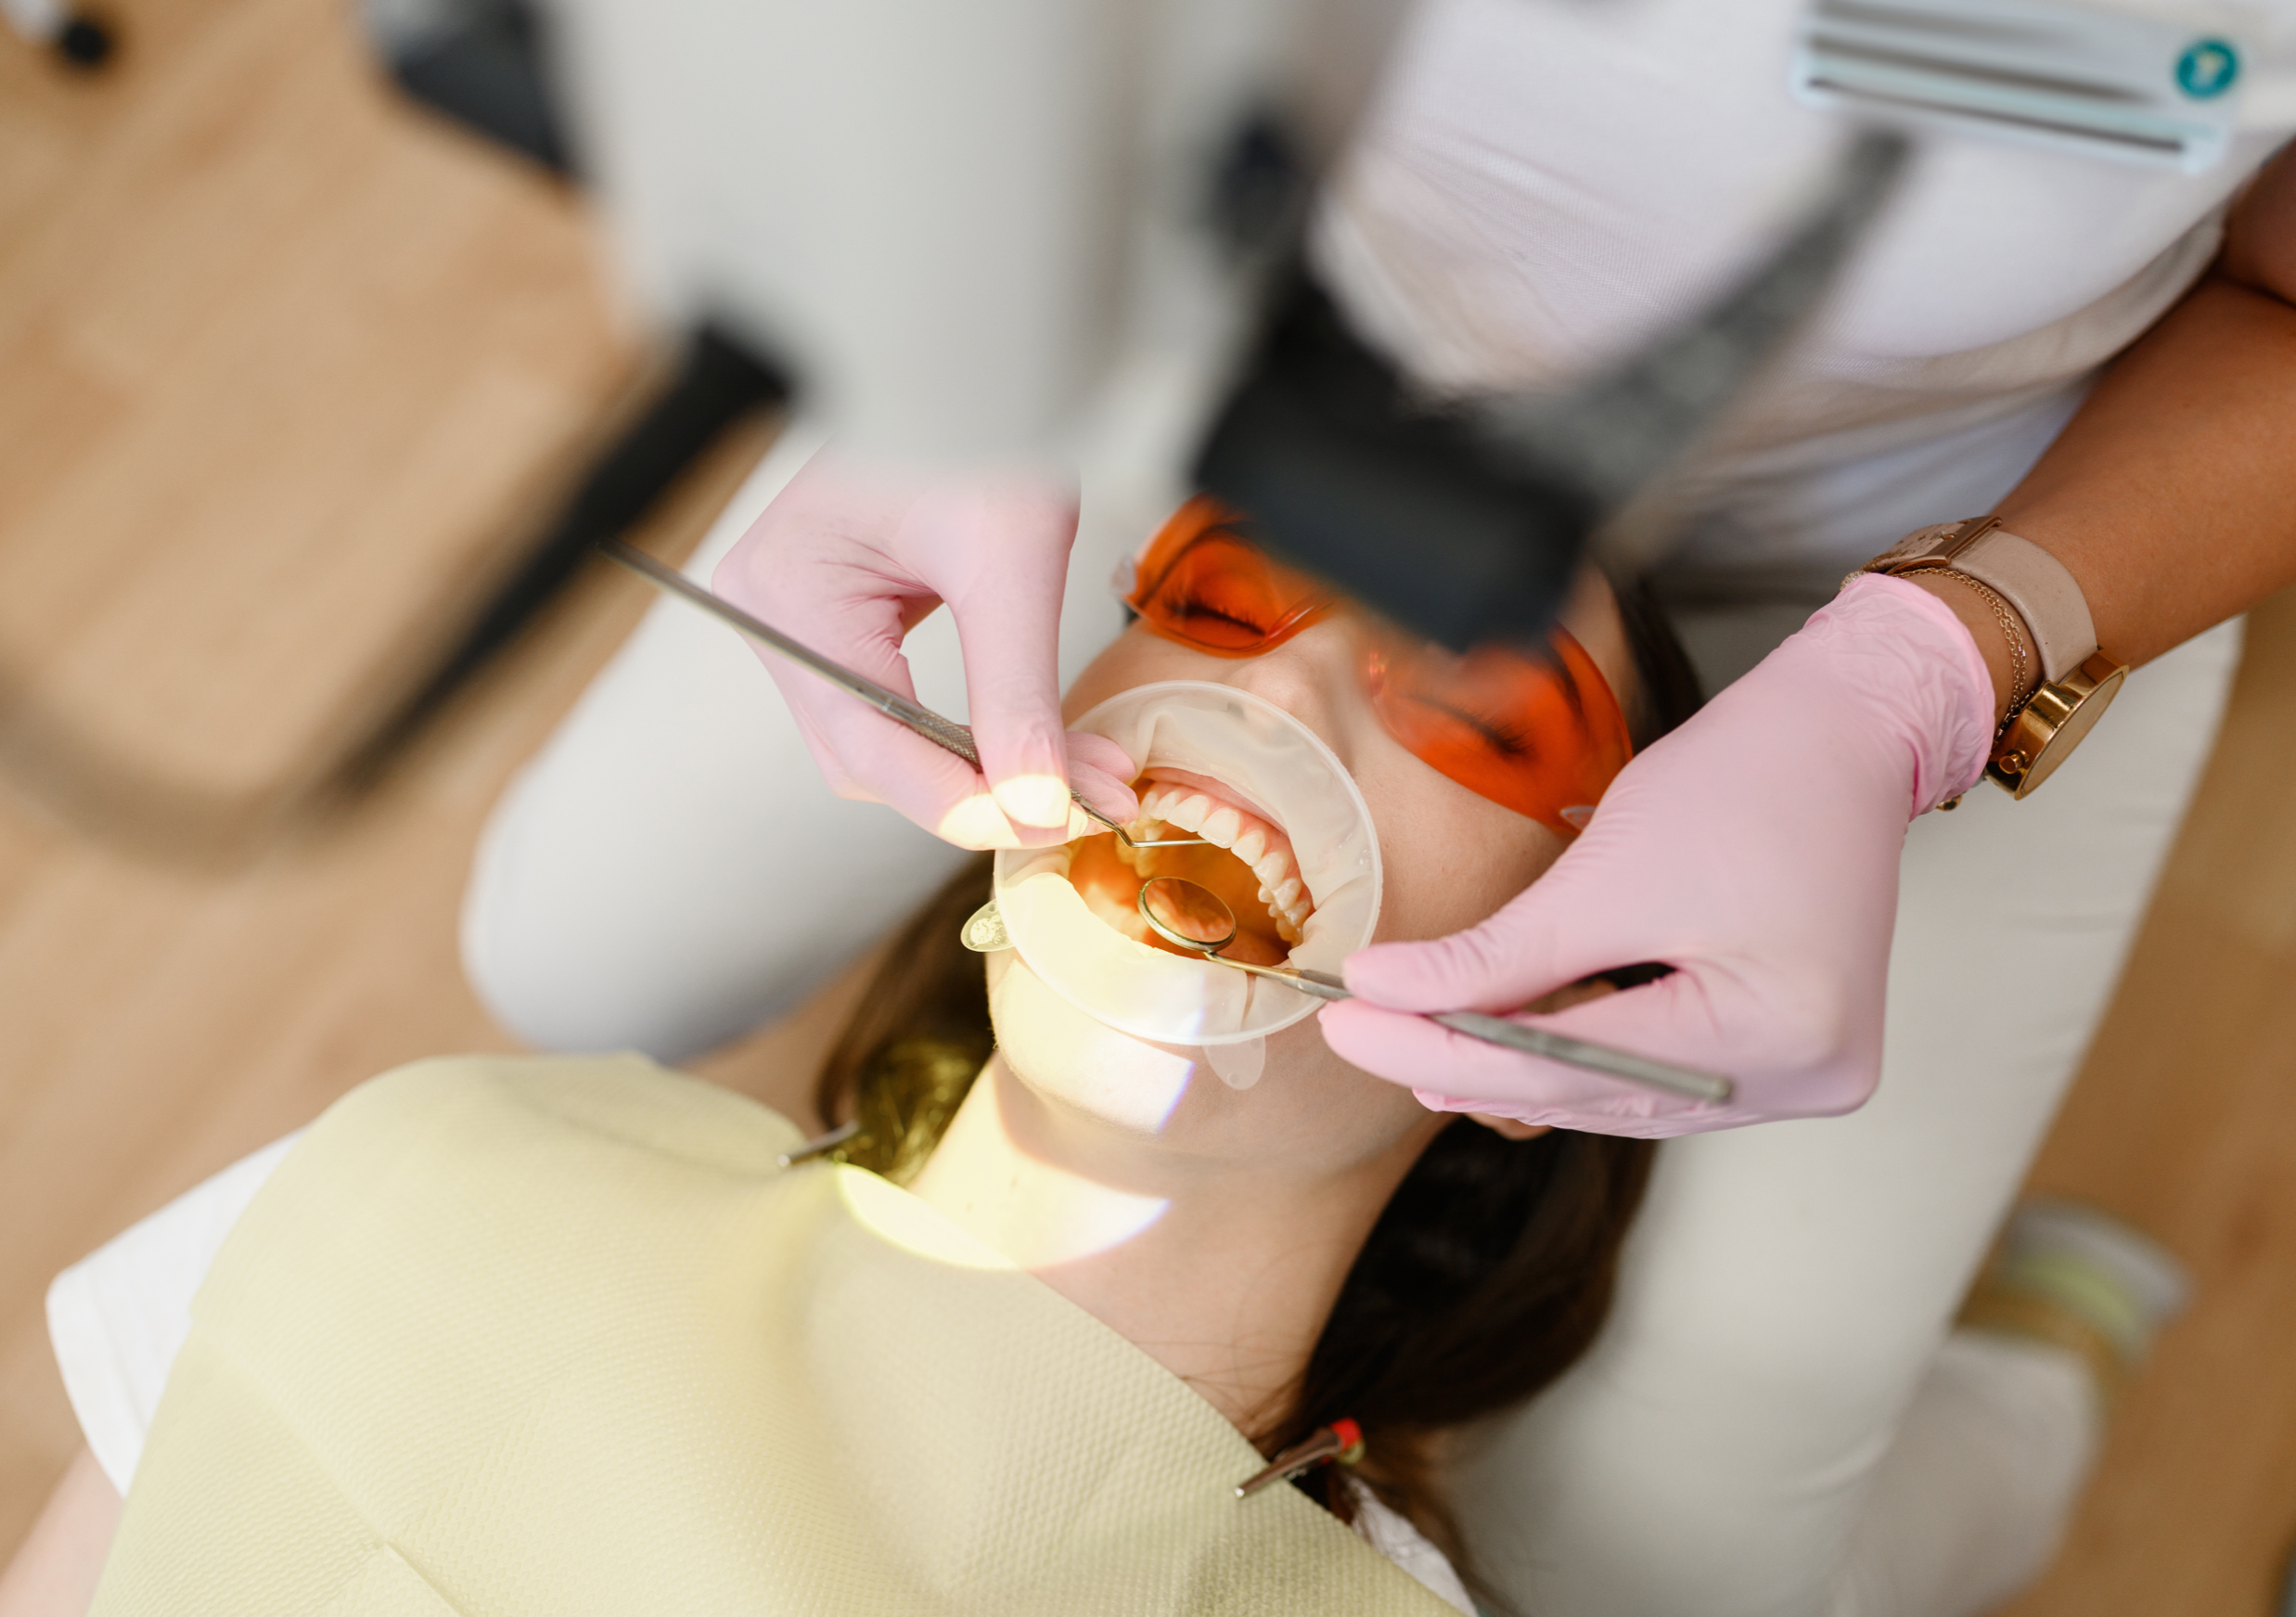 عيادة الاسنان وجراحة الفم والوجه والفكين